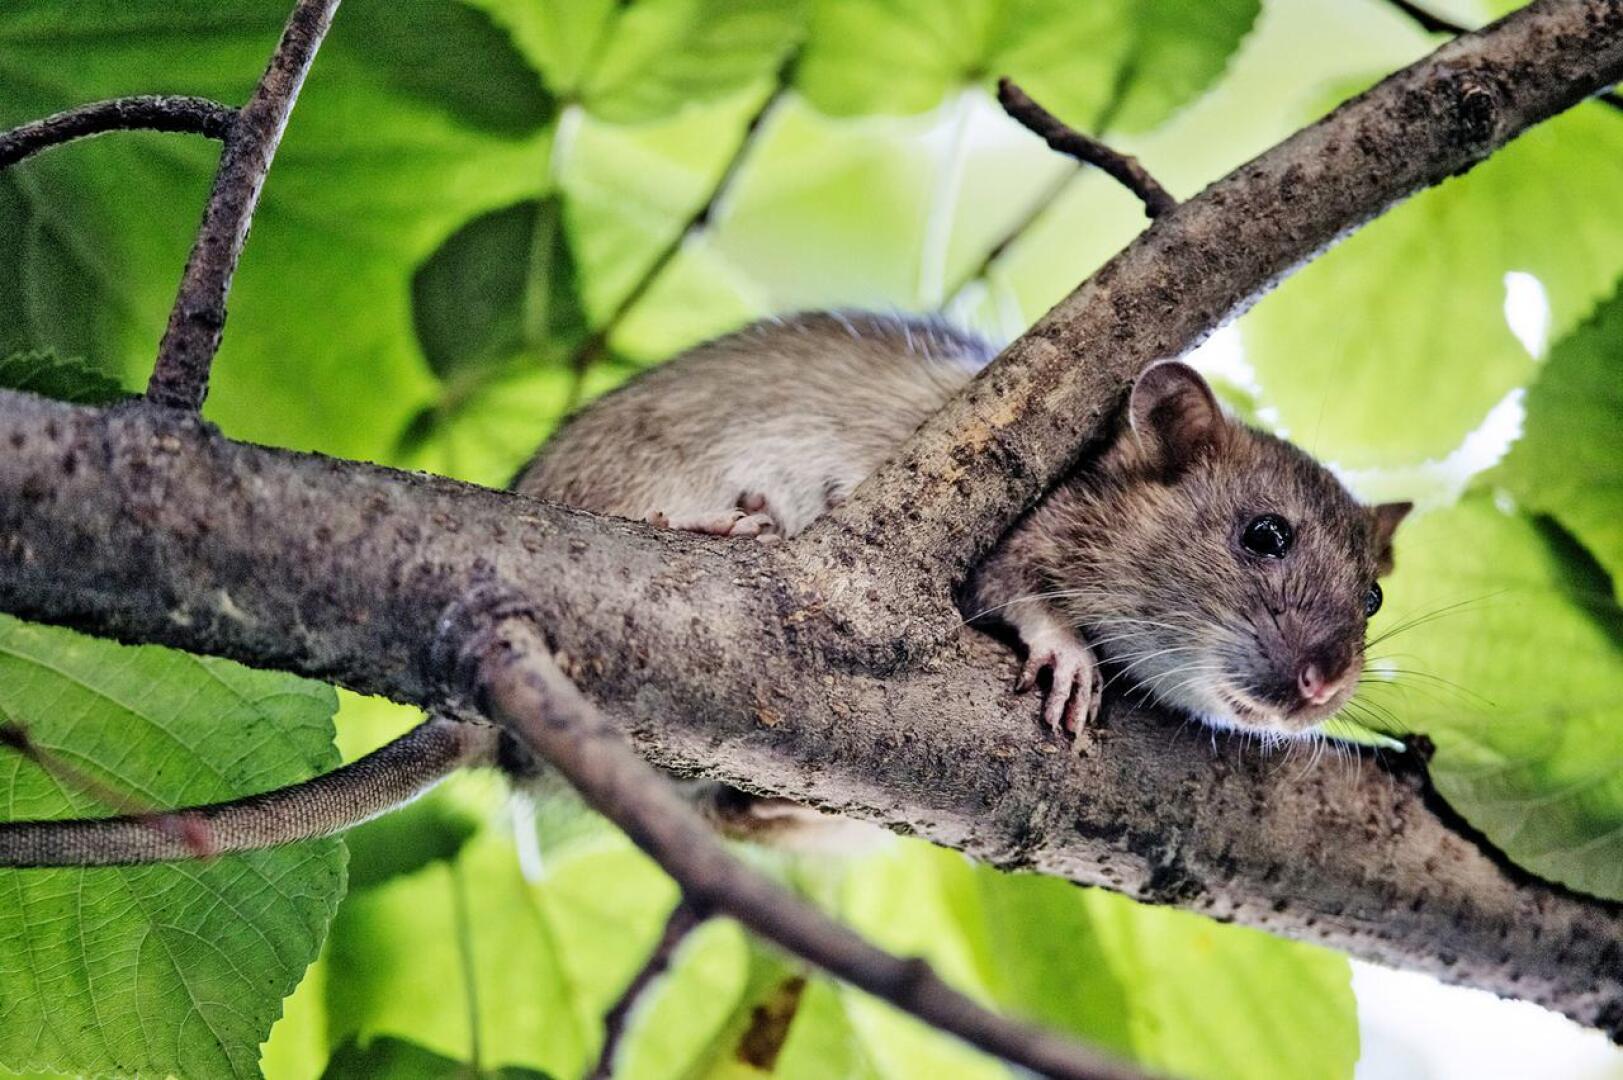 Rottia saattaa keväällä ja kesällä olla huomattavasti enemmän kuin yleensä. Jyrsijöiden määrään ja liikkeisiin vaikuttaa leudon talven ohella koronavirustilanne sekä sen kehittyminen. Tuhoja on odotettavissa myös paikoissa, joissa niiltä on yleensä vältytty.